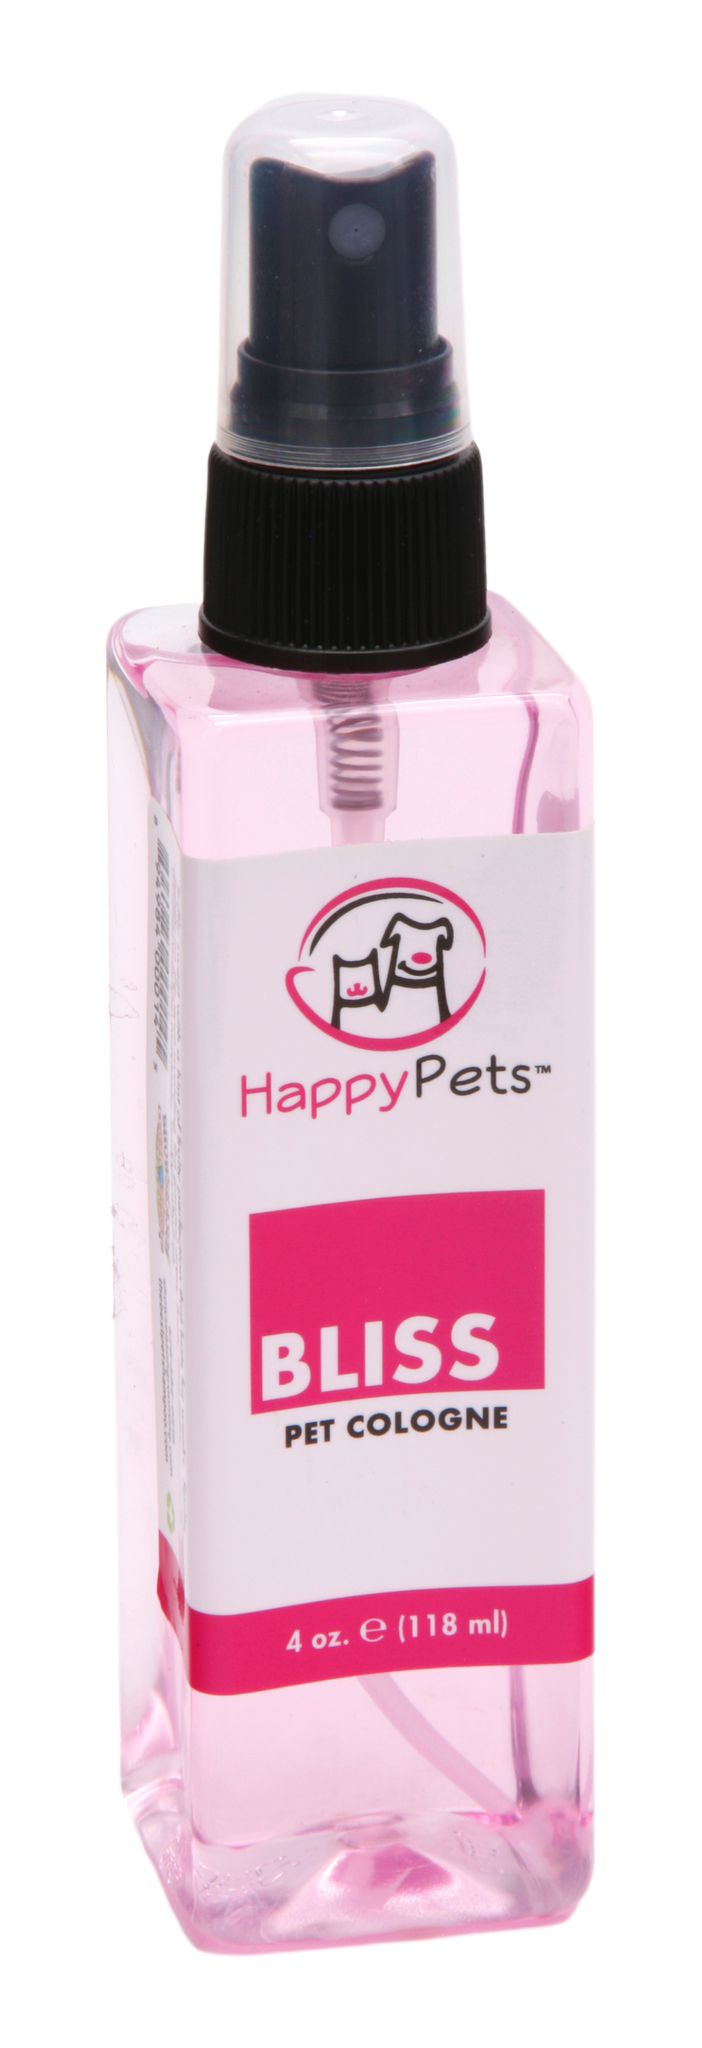 Bliss Pet Cologne 4 oz. | Happy Pets®